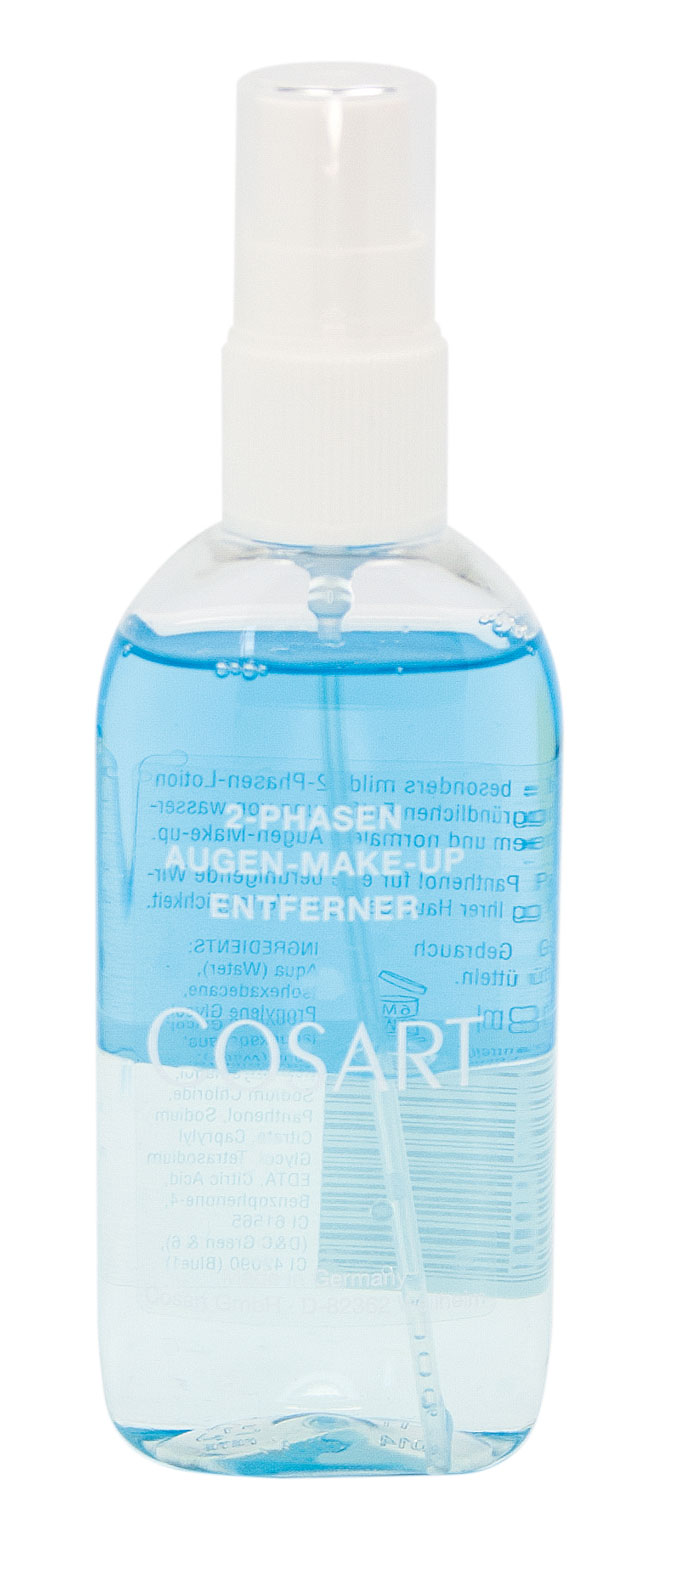 COSART 2-Phasen Augen-Make-up Entferner 100 ml